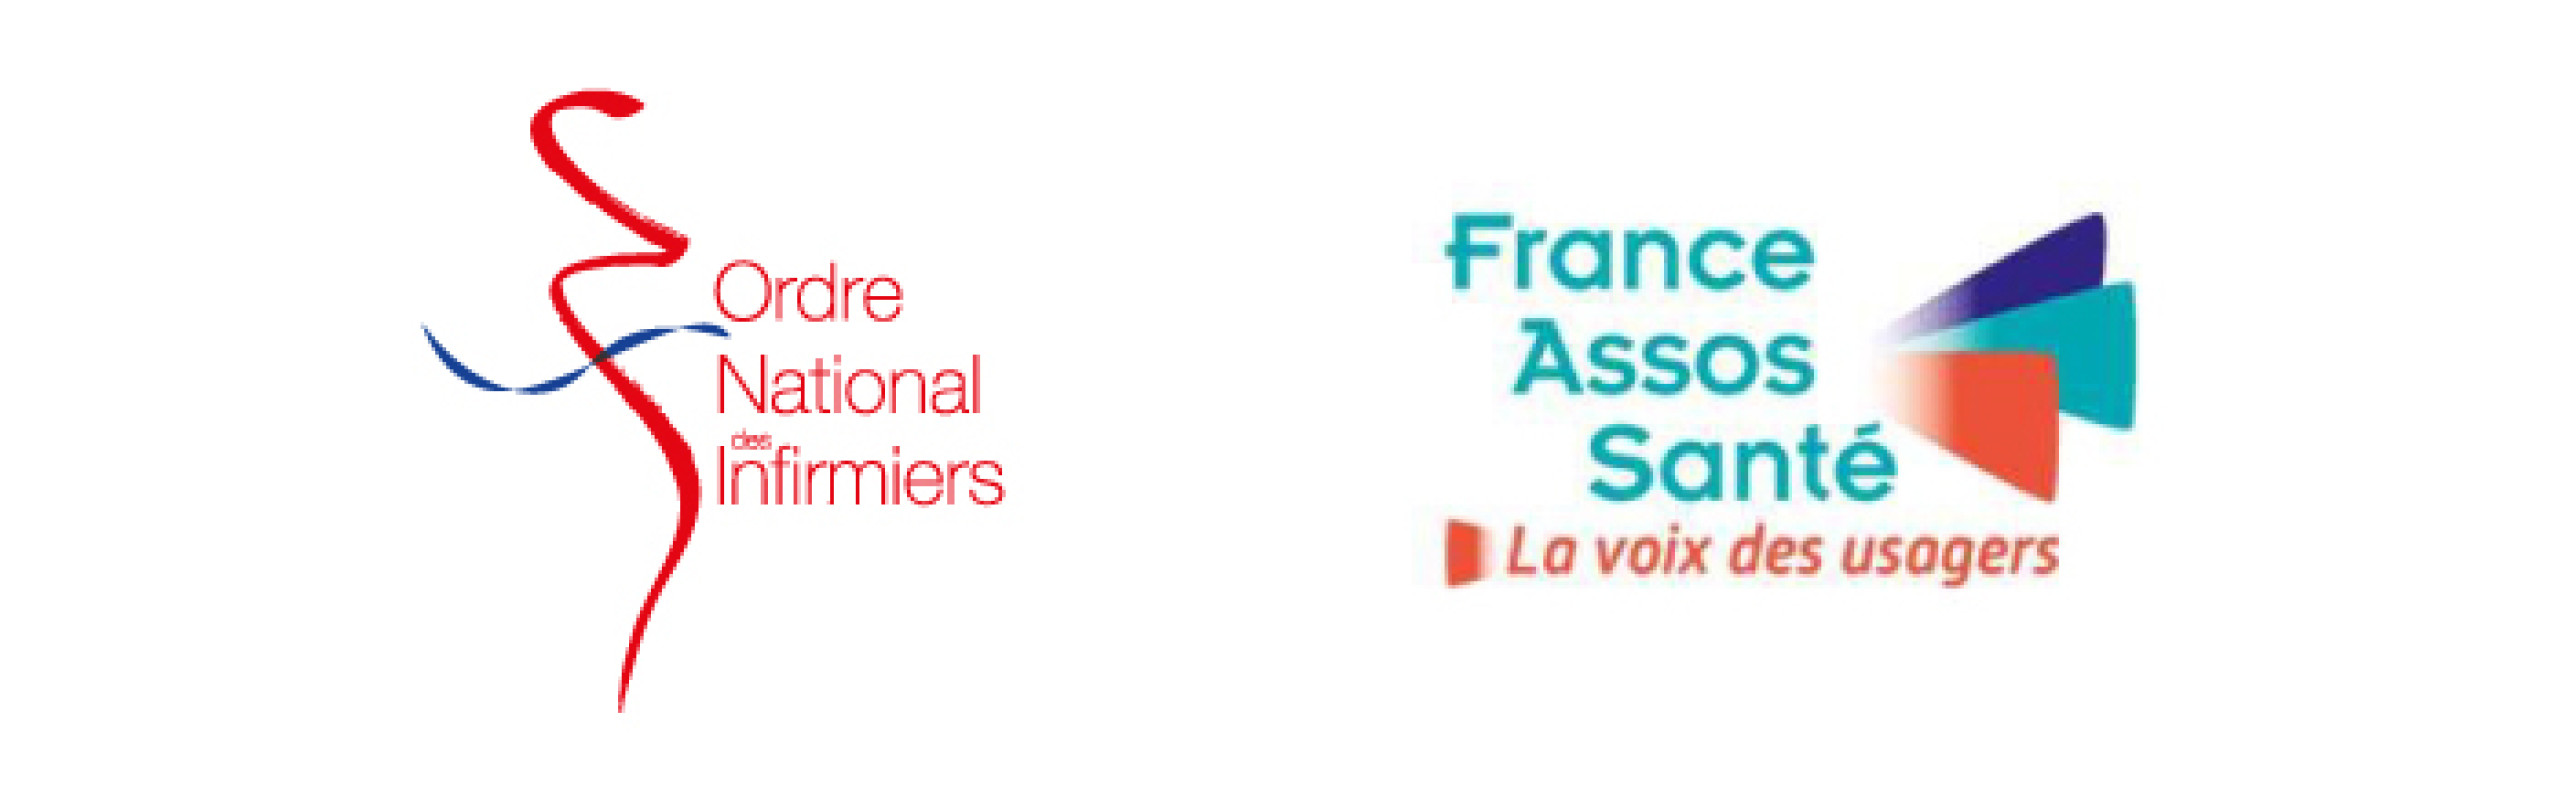 Logos : Ordre National Infirmiers & France Assos Santé